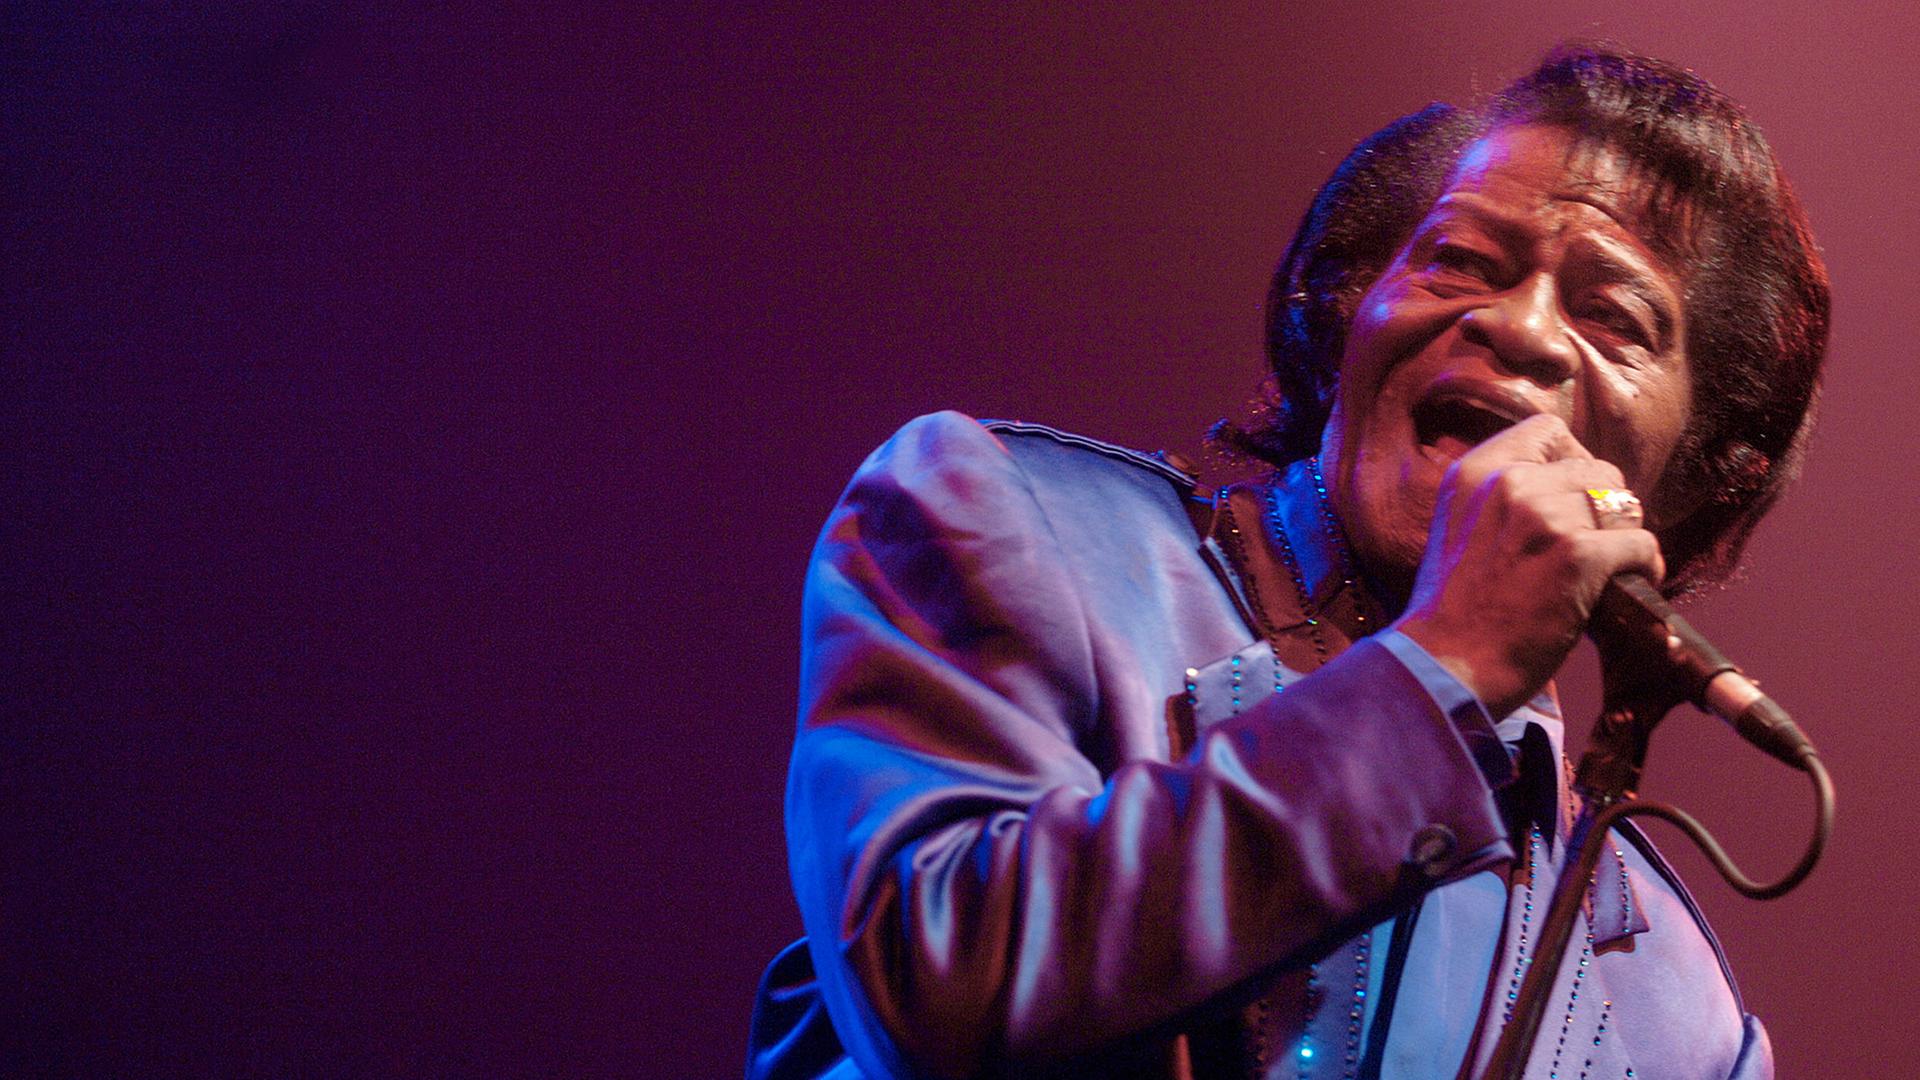 Der Soulsänger James Brown bei einem Auftritt am Mikrofon.